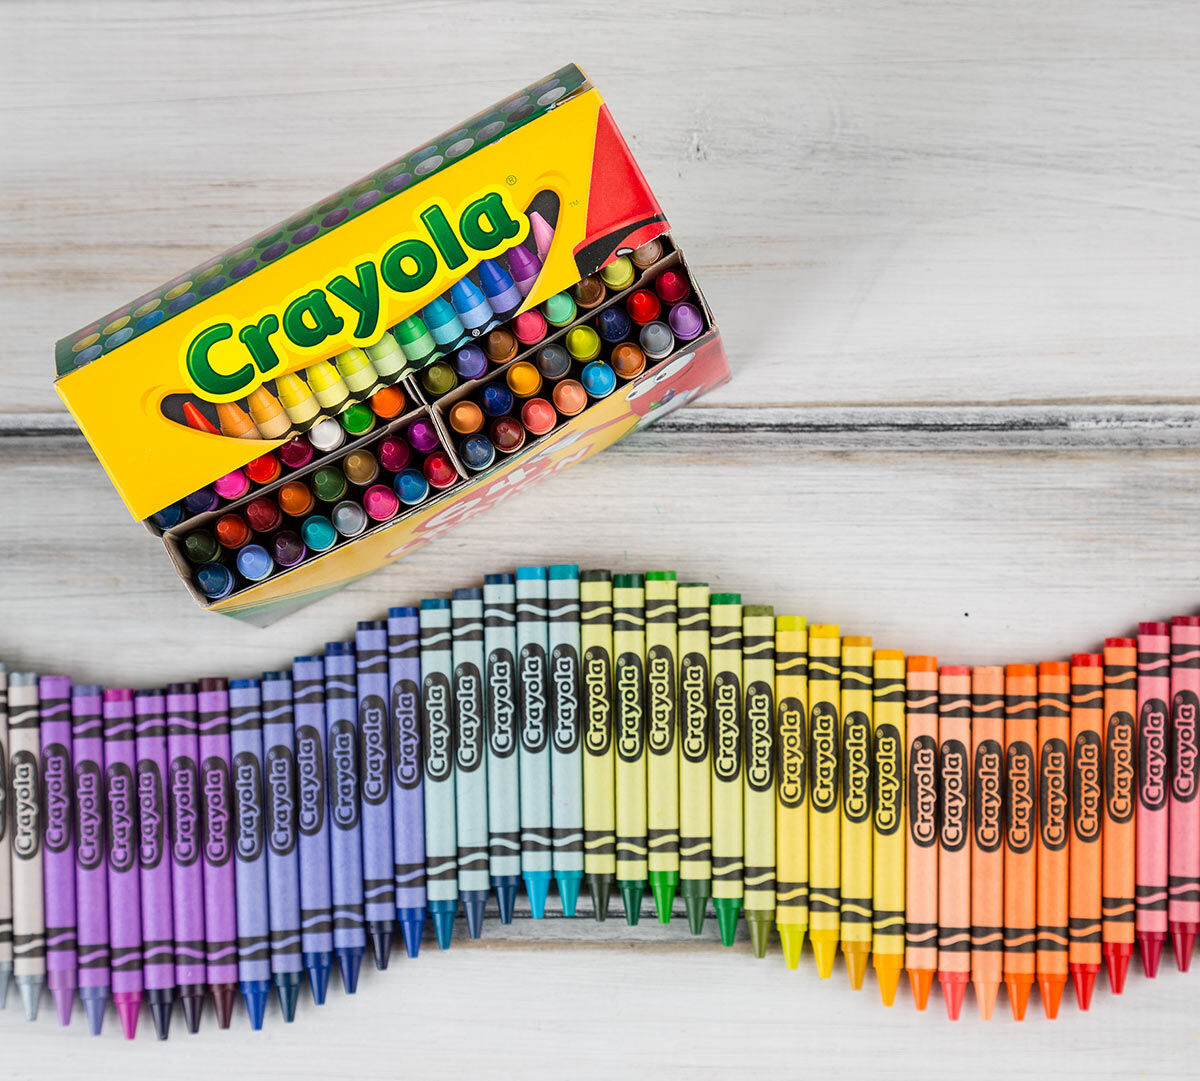 Crayola Crayons 64 ct.